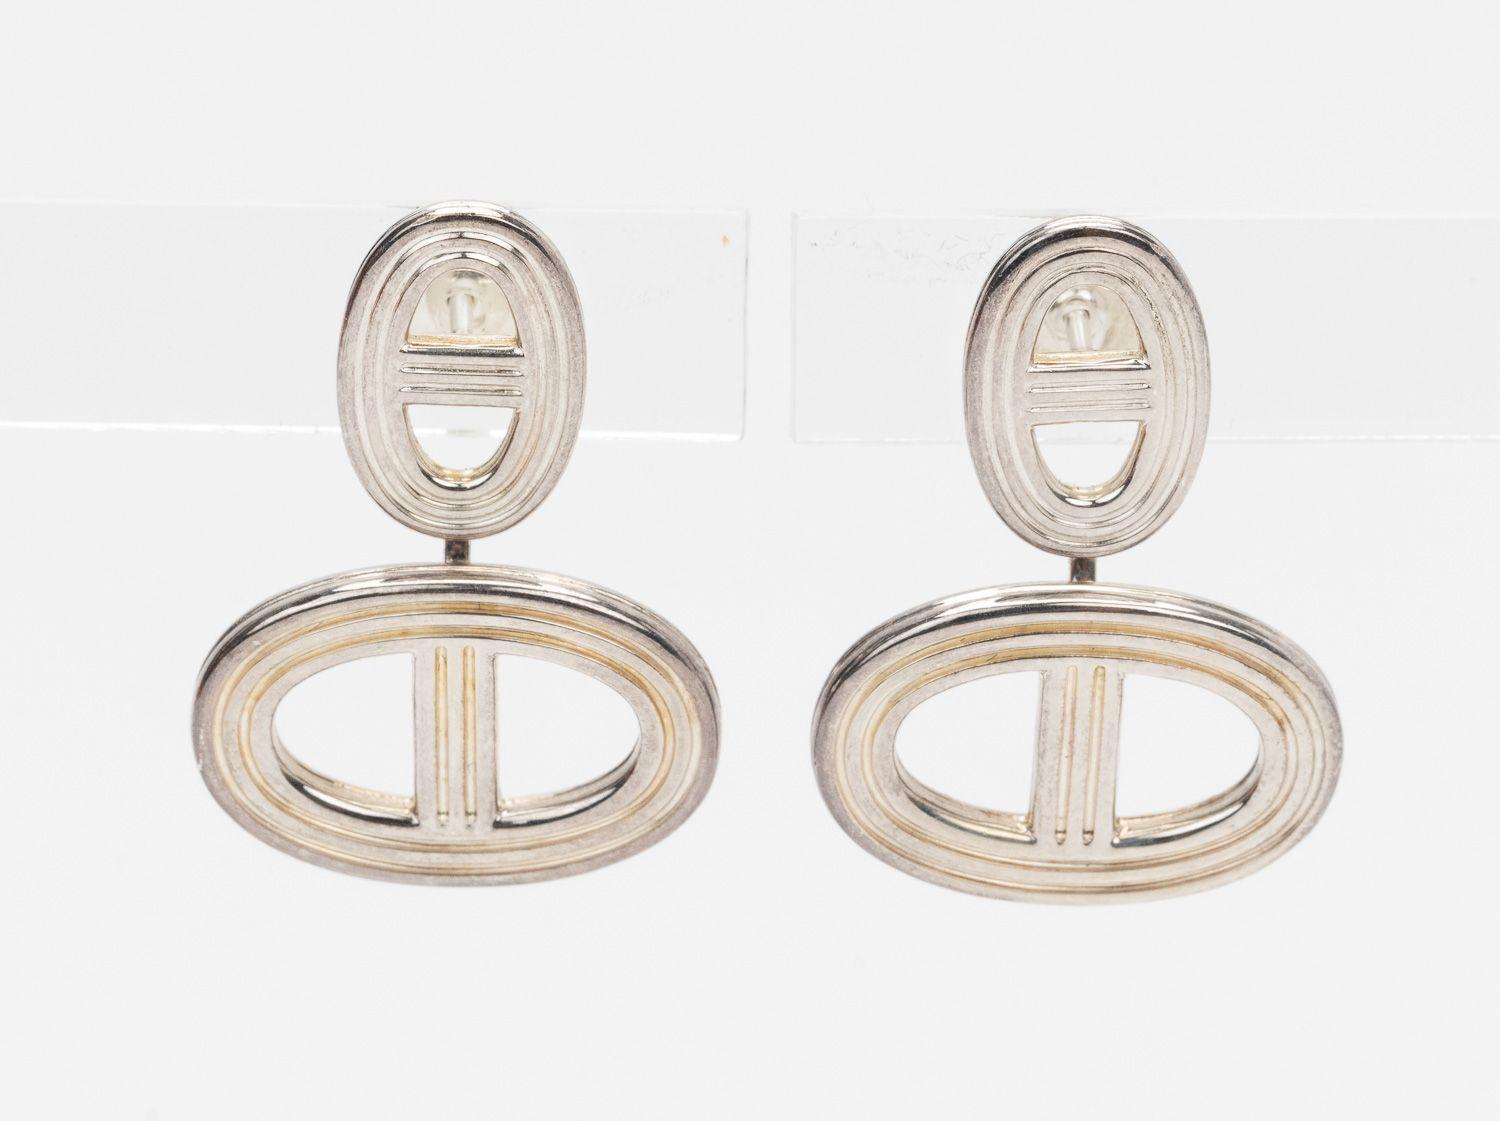 Boucles d'oreilles Hermès Chaine D'Ancre. Fabriquées en Italie, ces élégantes boucles d'oreilles en argent 925 présentent la forme unique de la chaîne Hermès et se ferment à l'aide d'un fermoir de type 